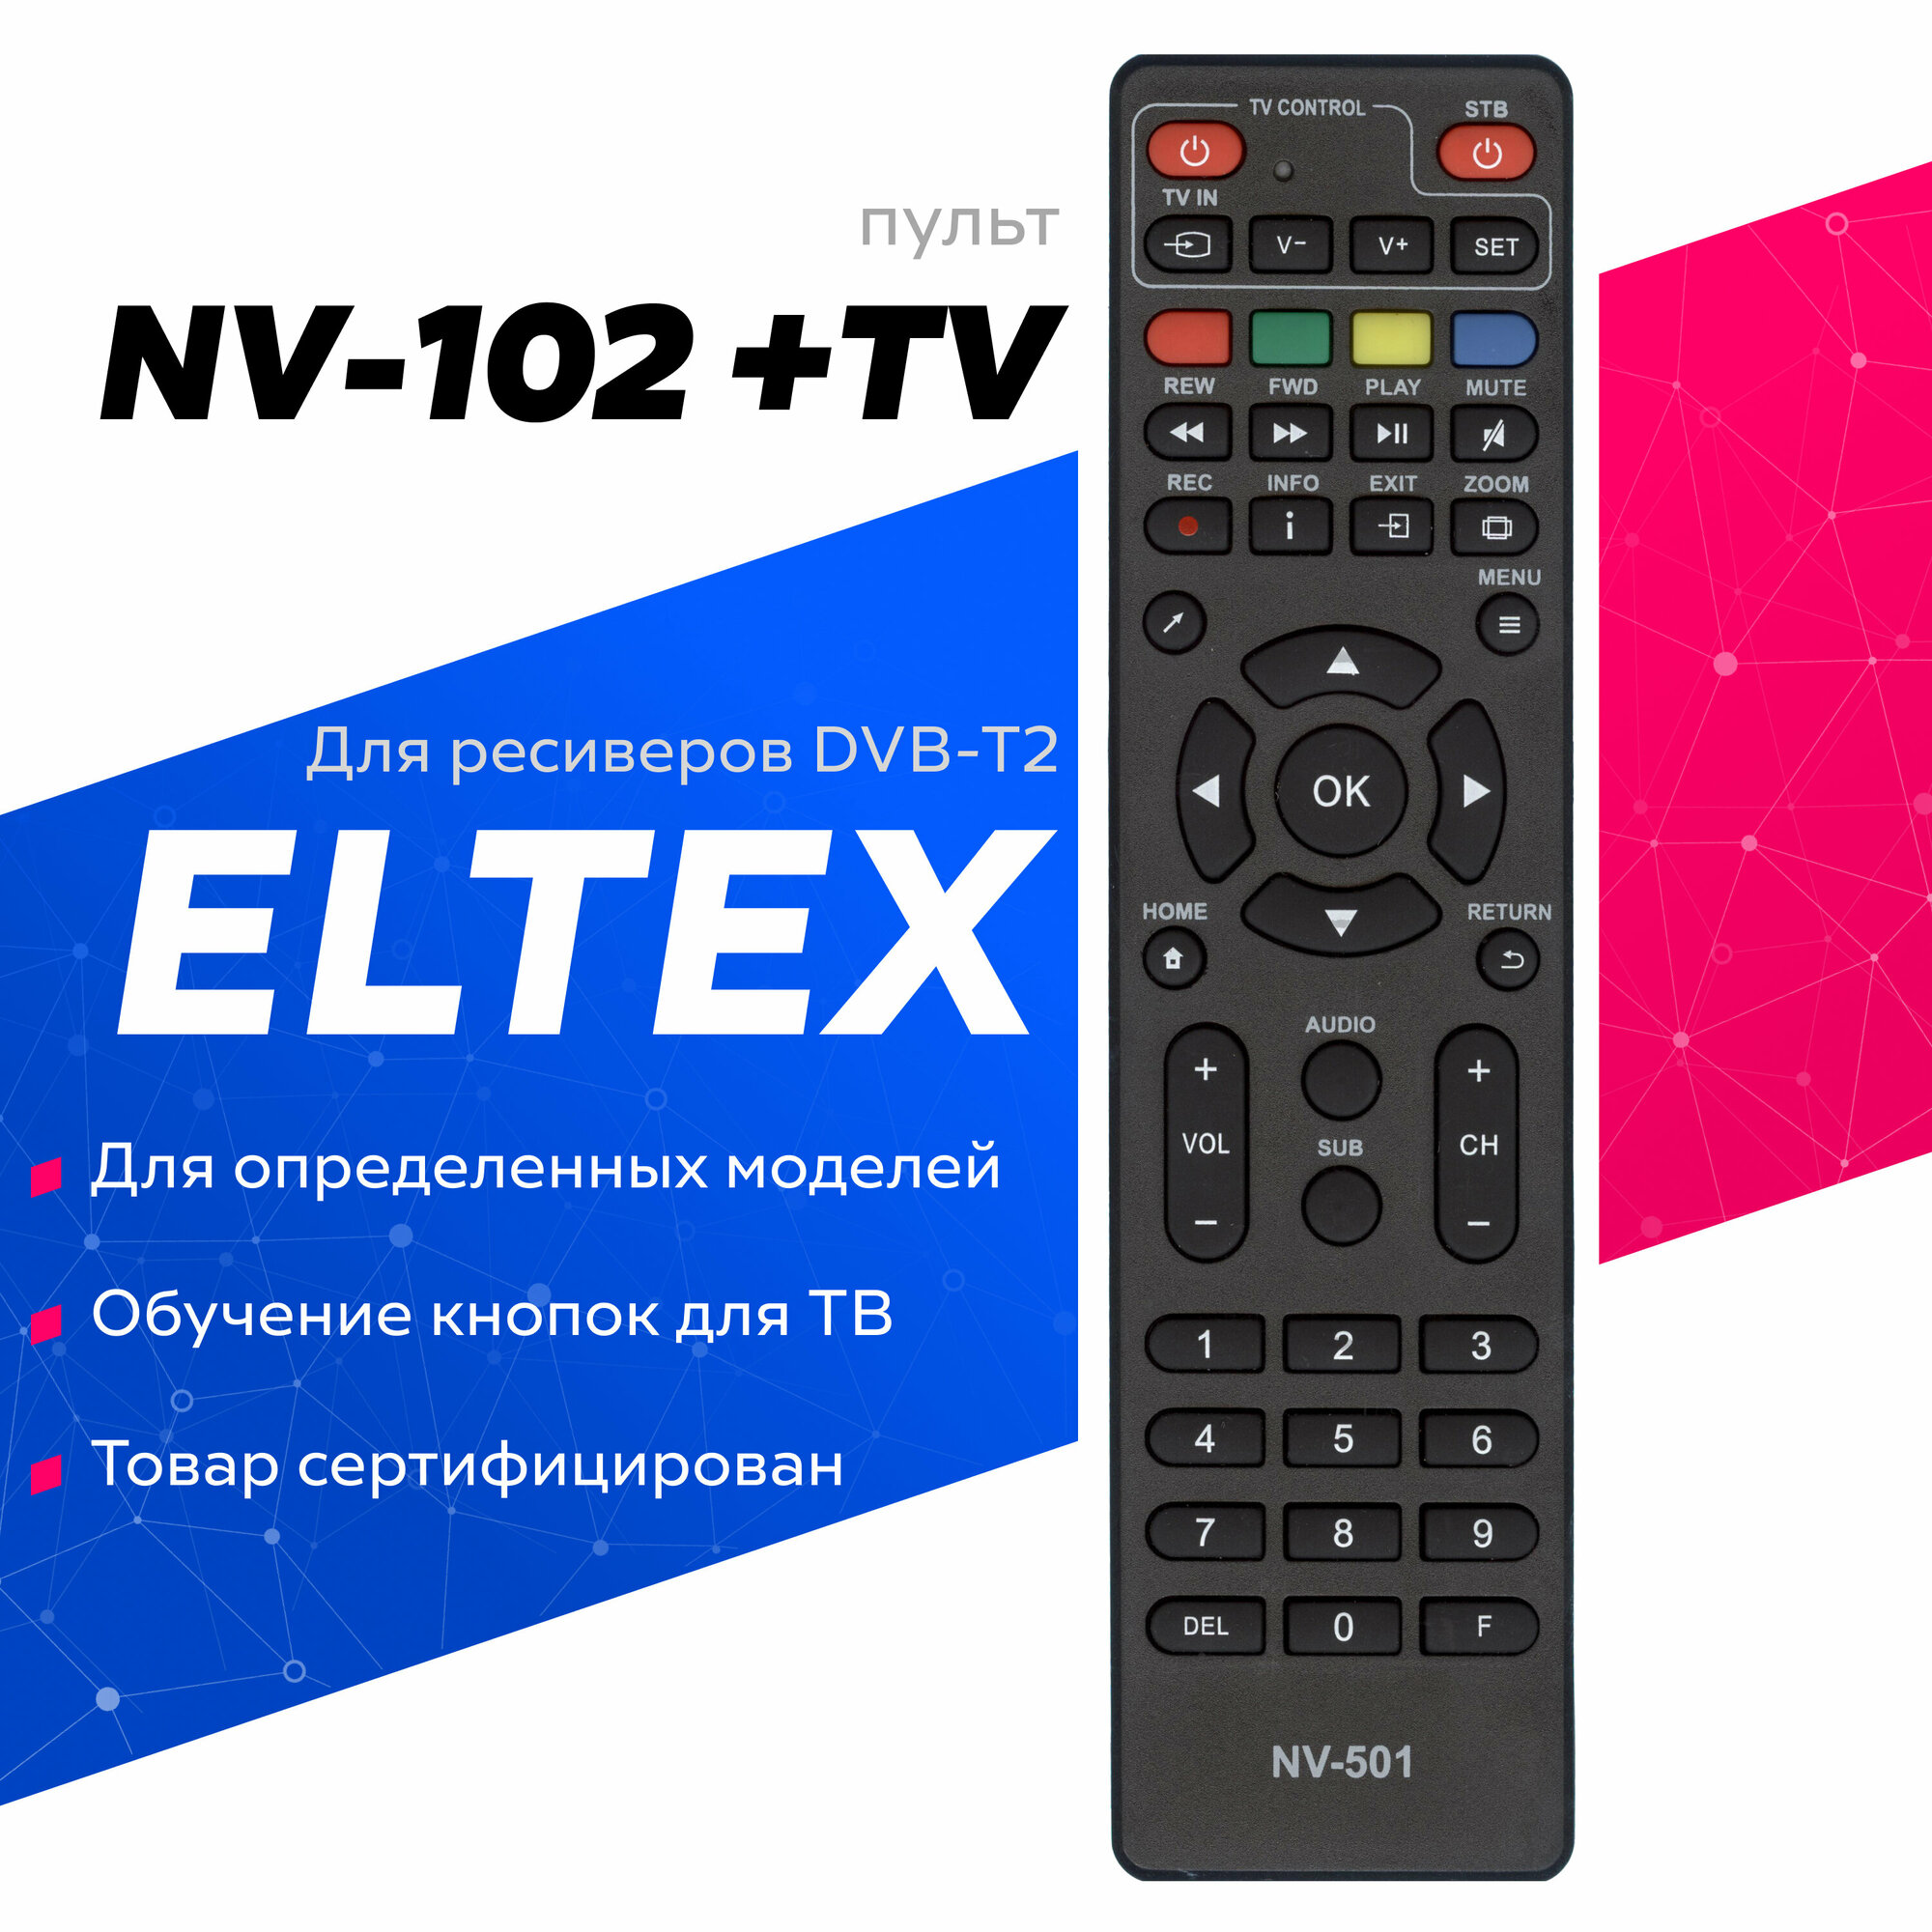 Пульт NV-102 +TV для ресиверов и приставок Eltex